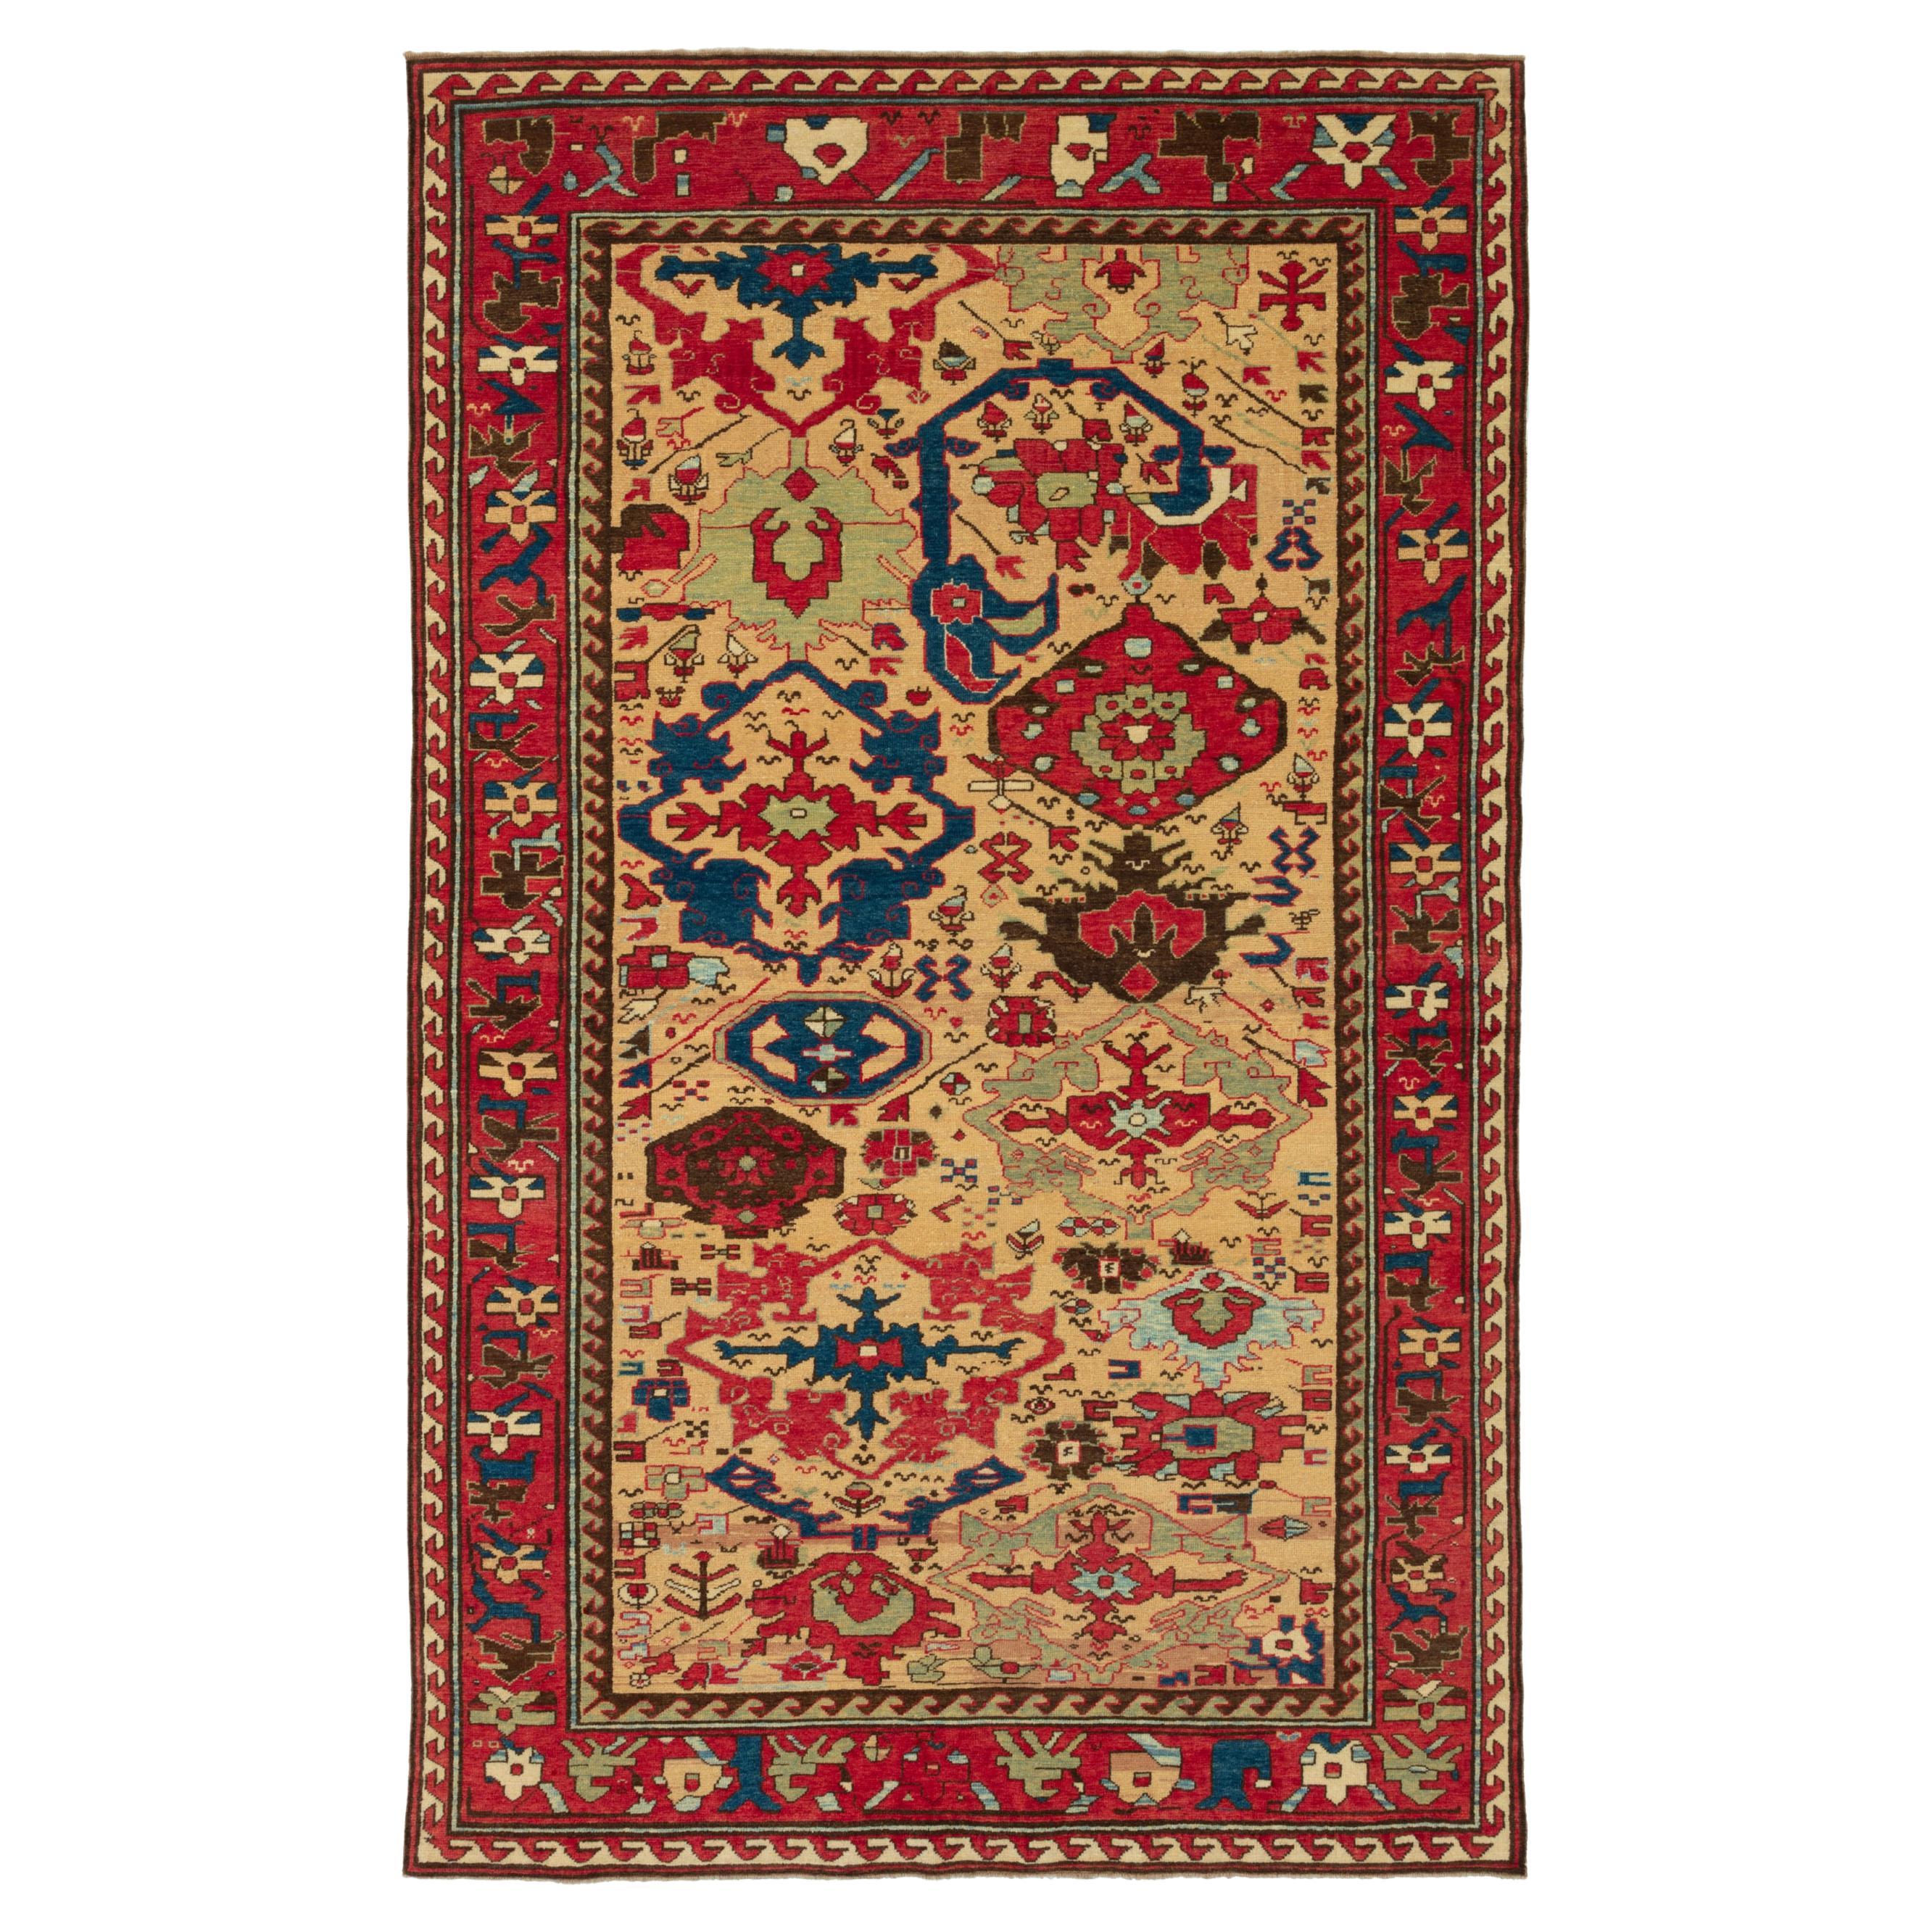 Ararat Rugs Azerbaijan Harshang Desing Carpet Caucasian Revival Rug Natural Dyed For Sale